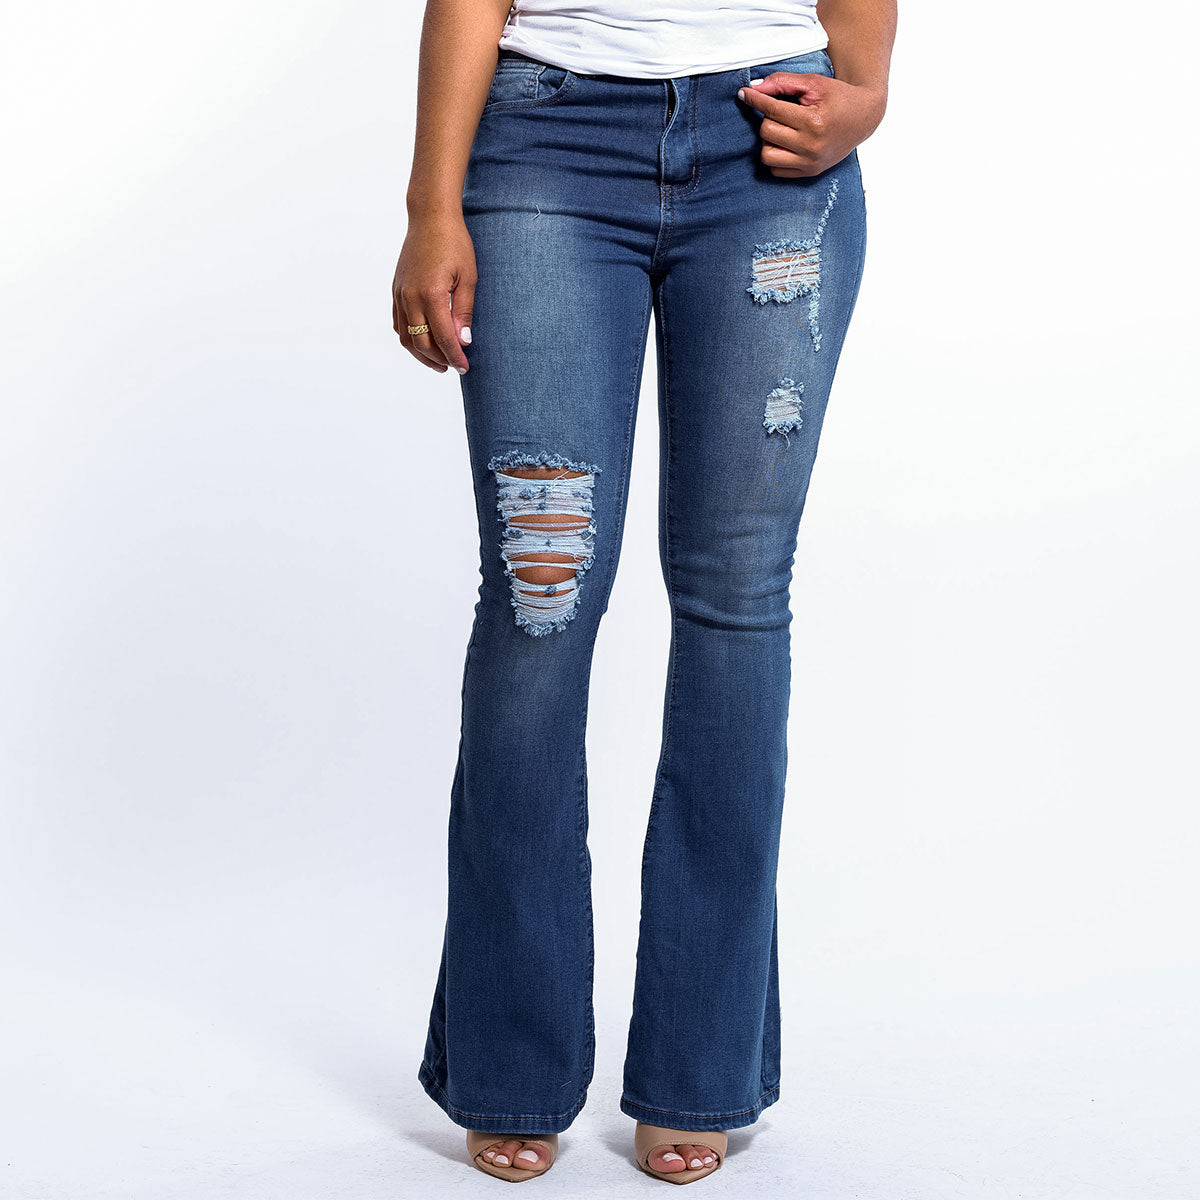 Miss YCMC Hi-Waist Distressed Flare Denim Jeans